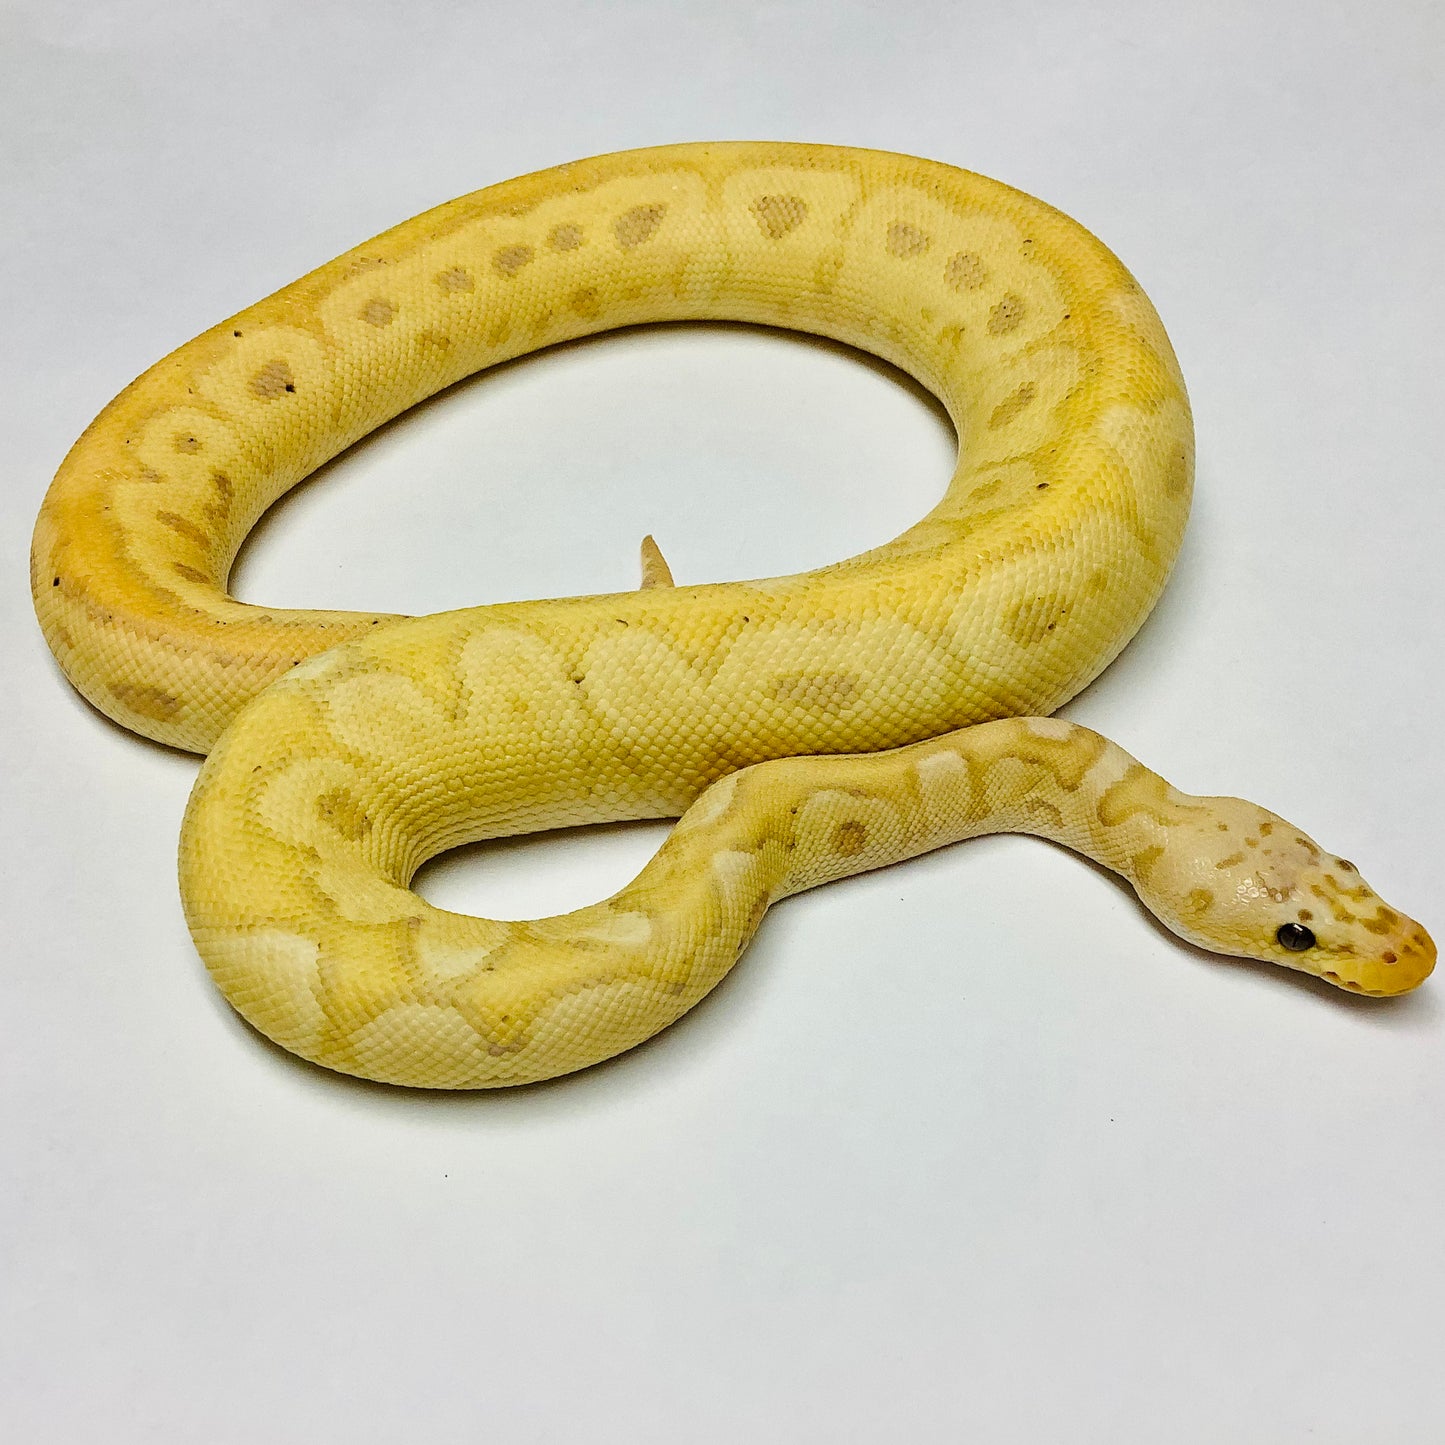 Banana Enchi Pastel Clown Ball Python - Male #2020M01-1